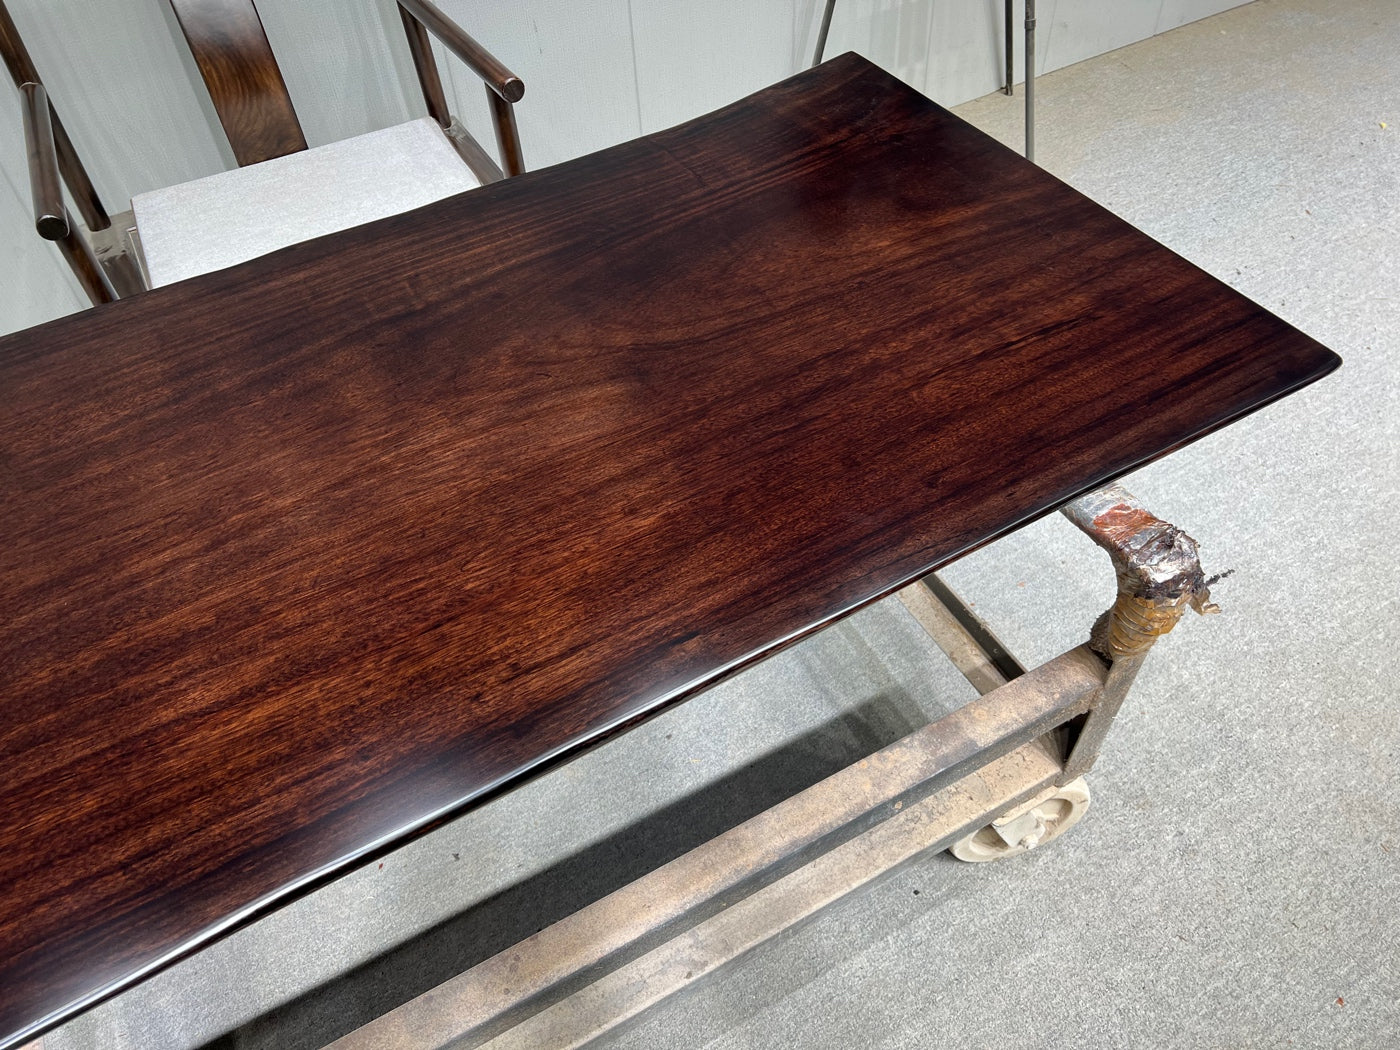 Grande tavolo da conferenza in lastra di legno grezzo, tavolo in legno dell'Africa occidentale, tavolo con bordo vivo naturale